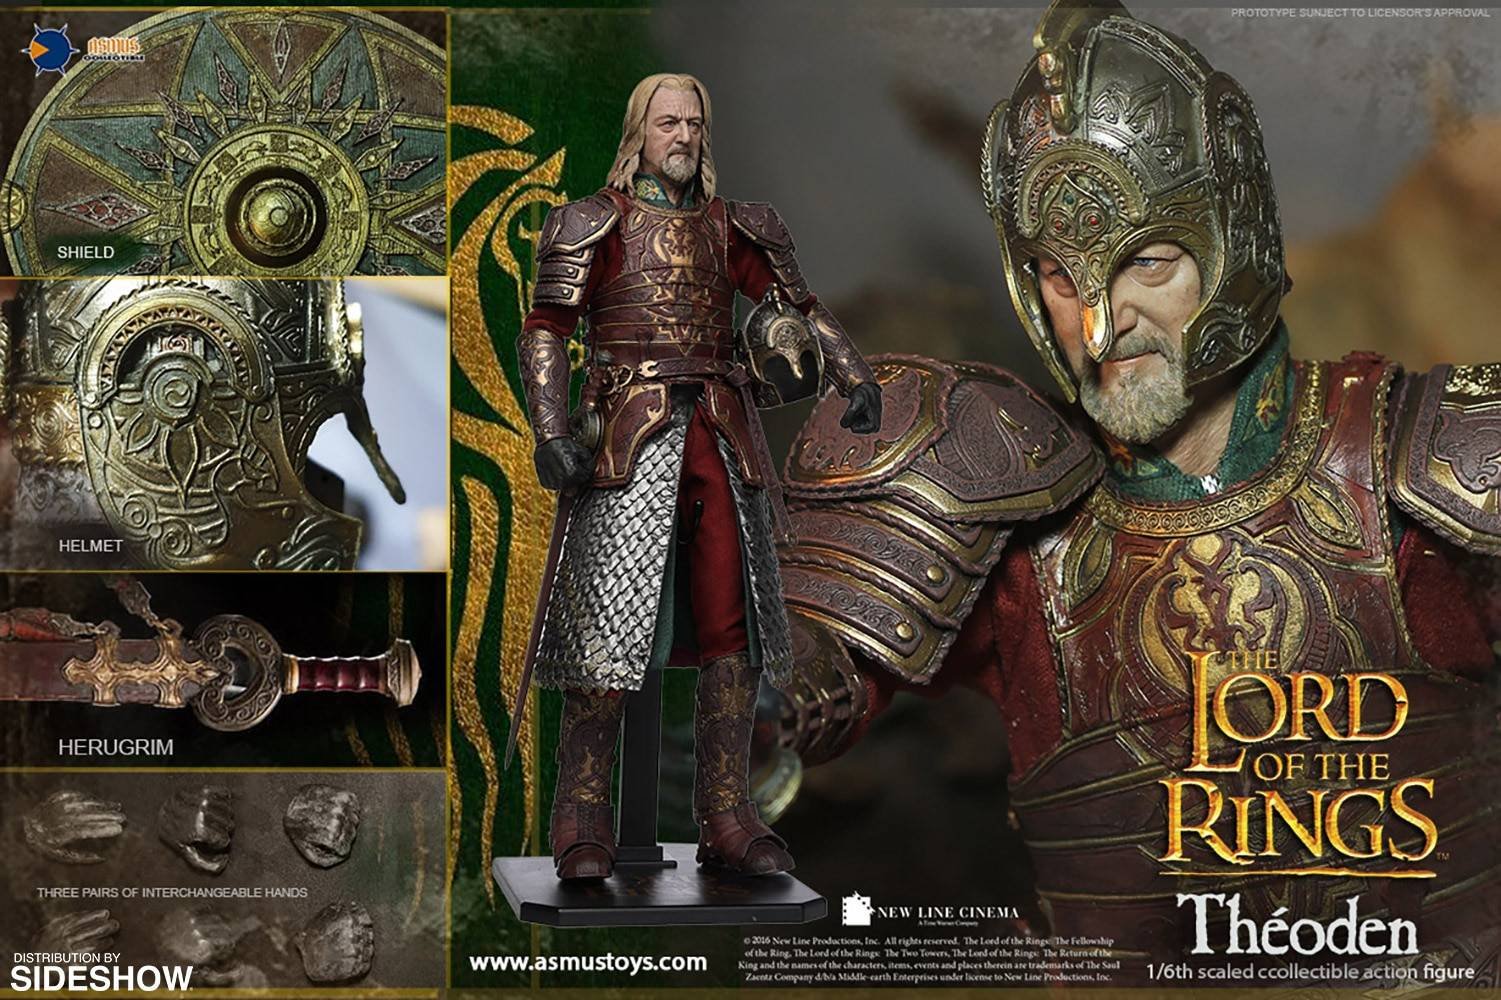 Immagine di Théoden dal Signore degli Anelli prodotto da Asmus Toys